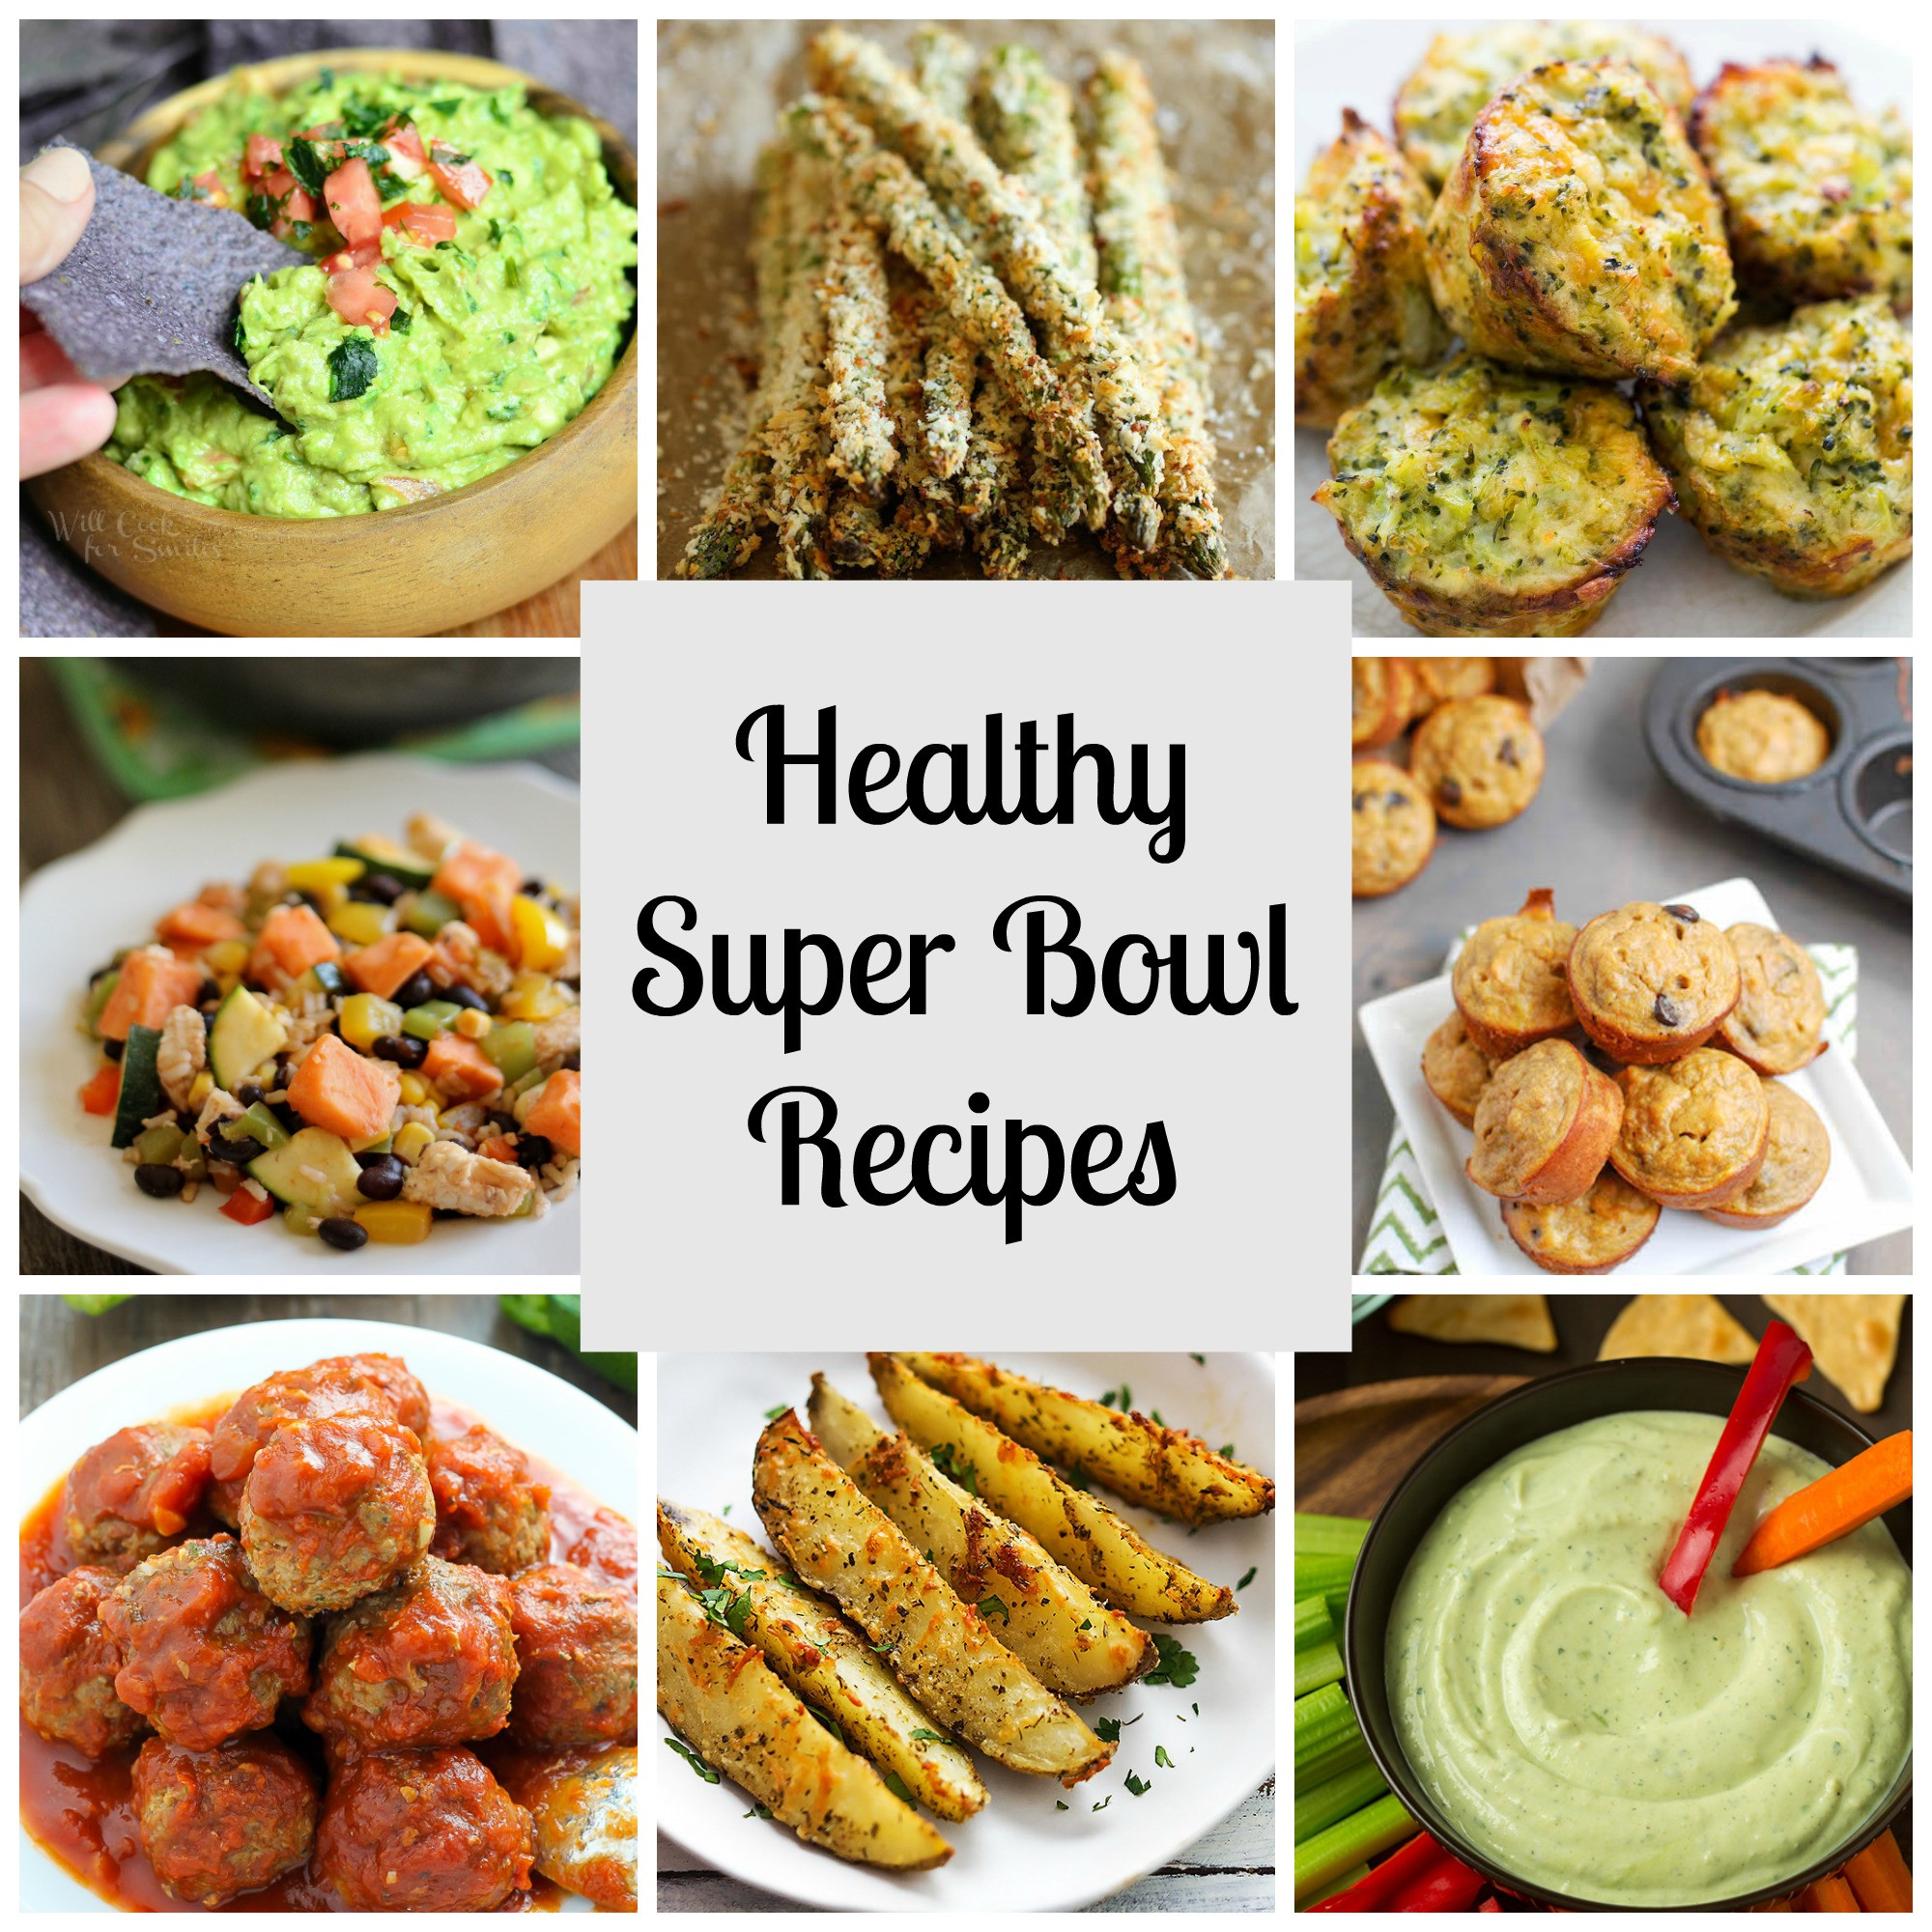 Super Bowl Recipes Healthy
 Healthy Super Bowl Recipes RunEatSnap